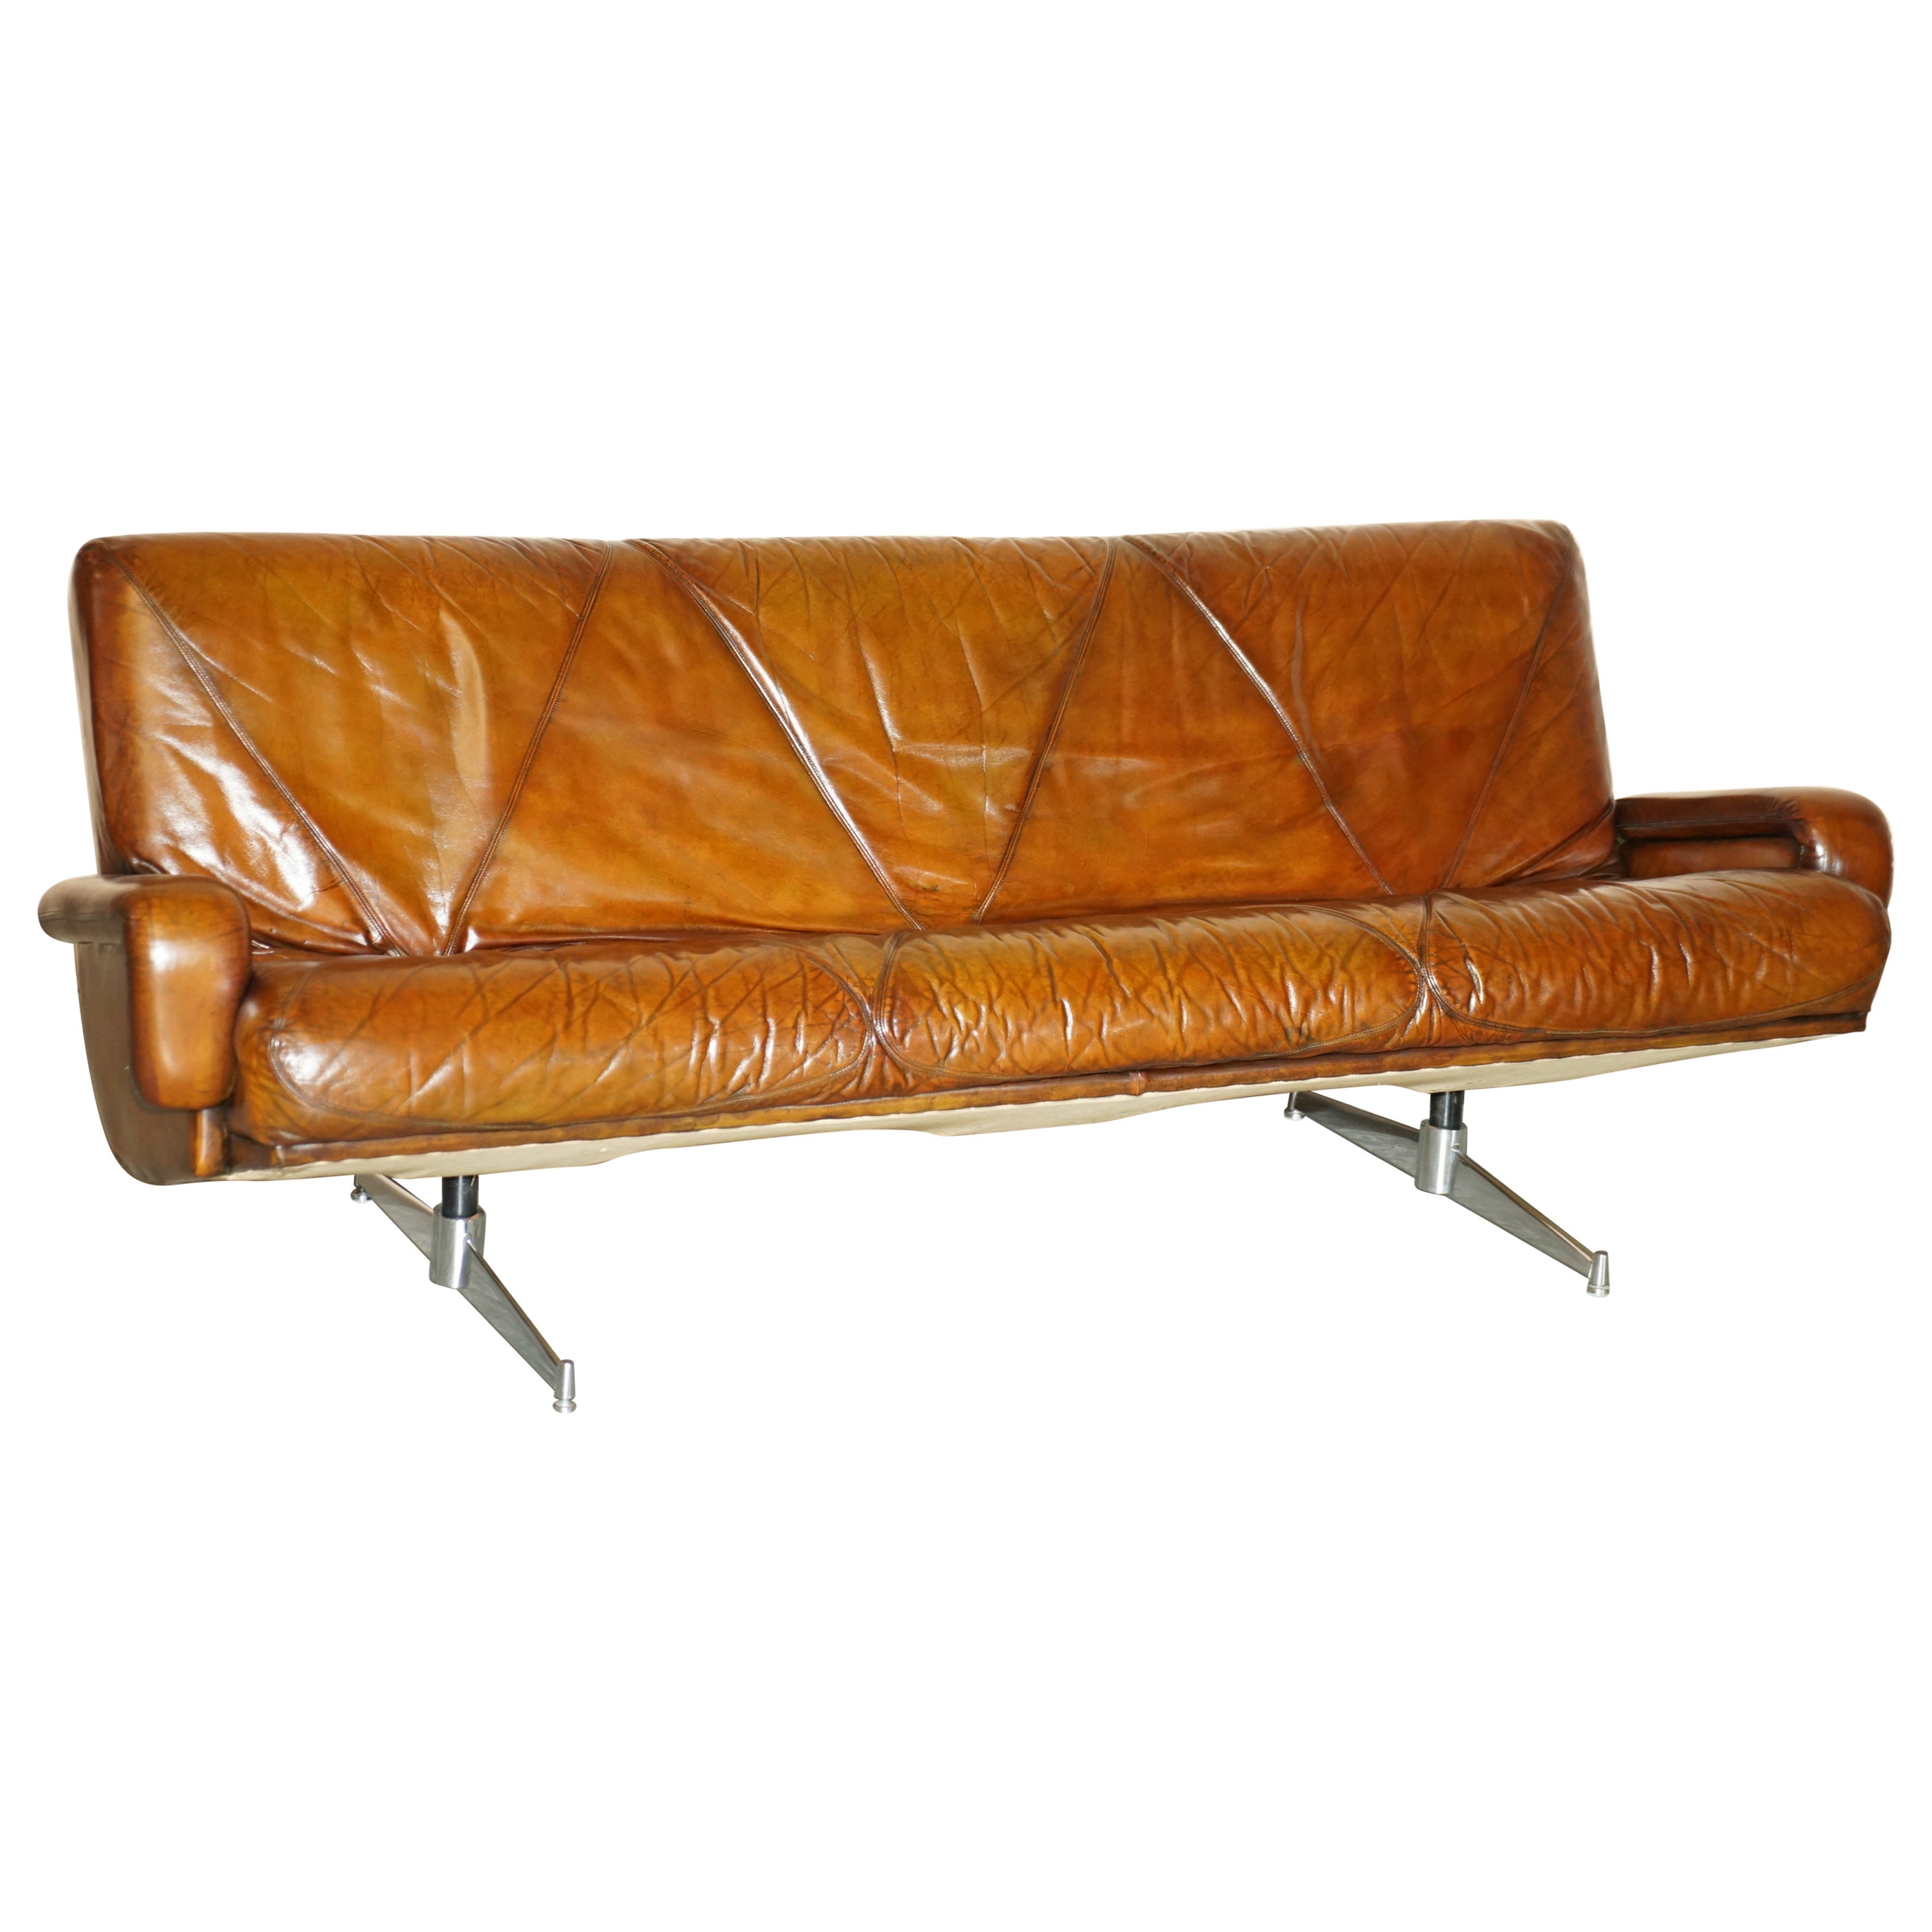 Stilvolles Vintage-Sofa aus braunem handgefärbtem Leder, Mid-Century Modern, vollständig restauriert